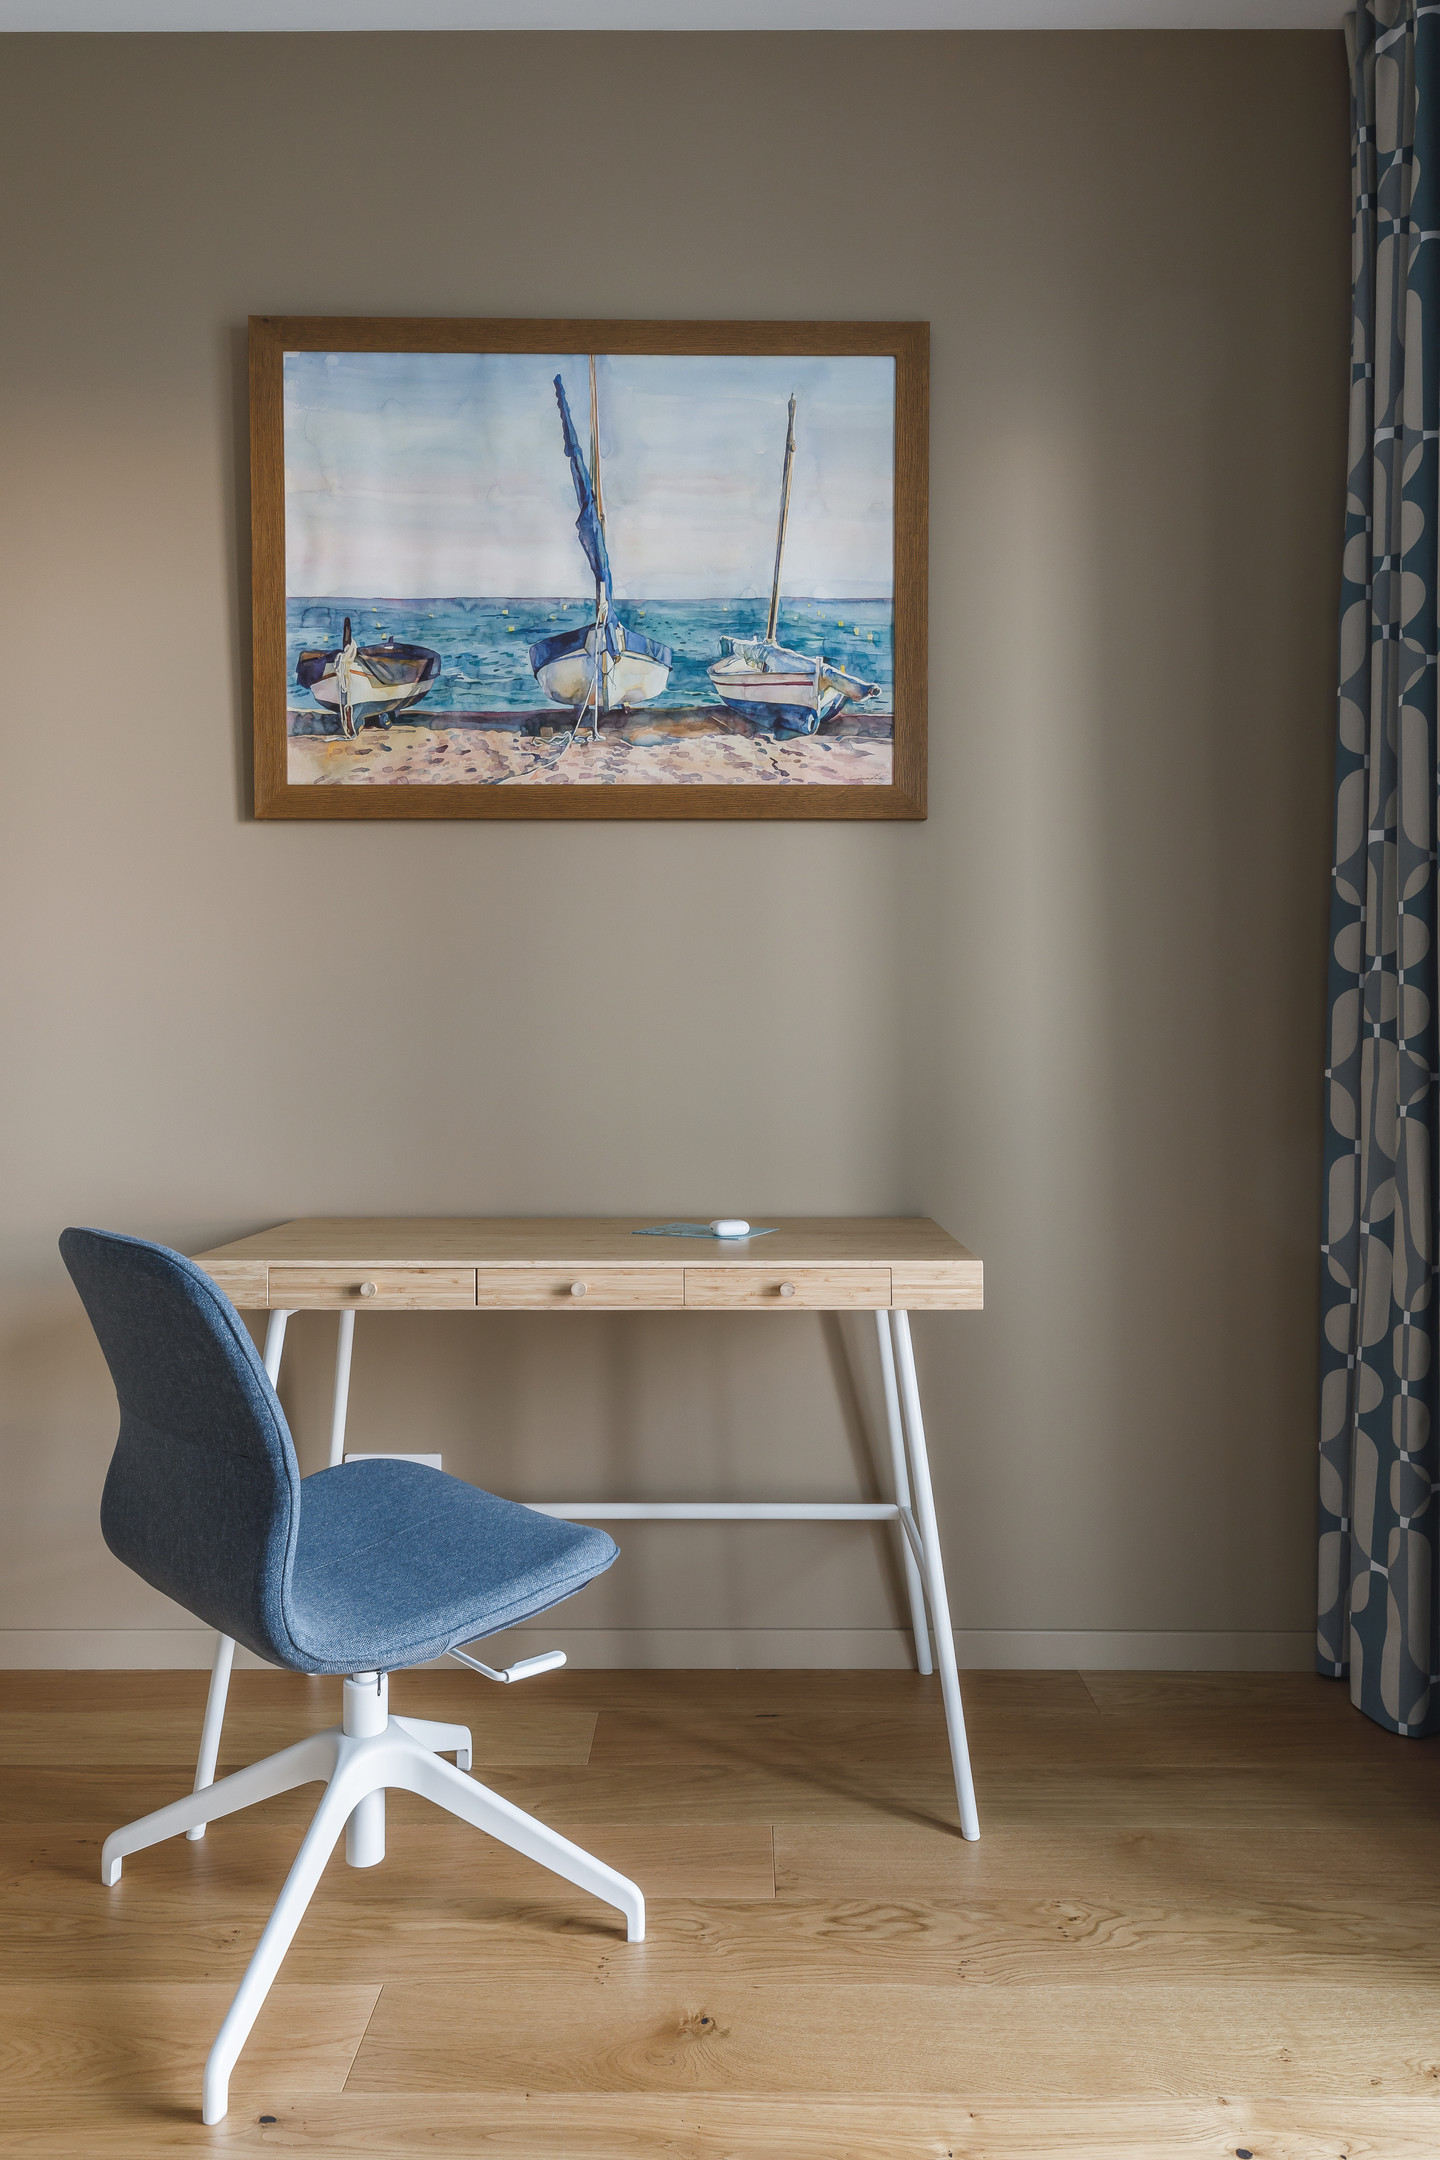 Đối diện giường ngủ là bộ bàn ghế tối giản với chiếc bàn gỗ và ghế ngồi màu xanh lam, trên tường là tranh treo vẽ cảnh biển sinh động.